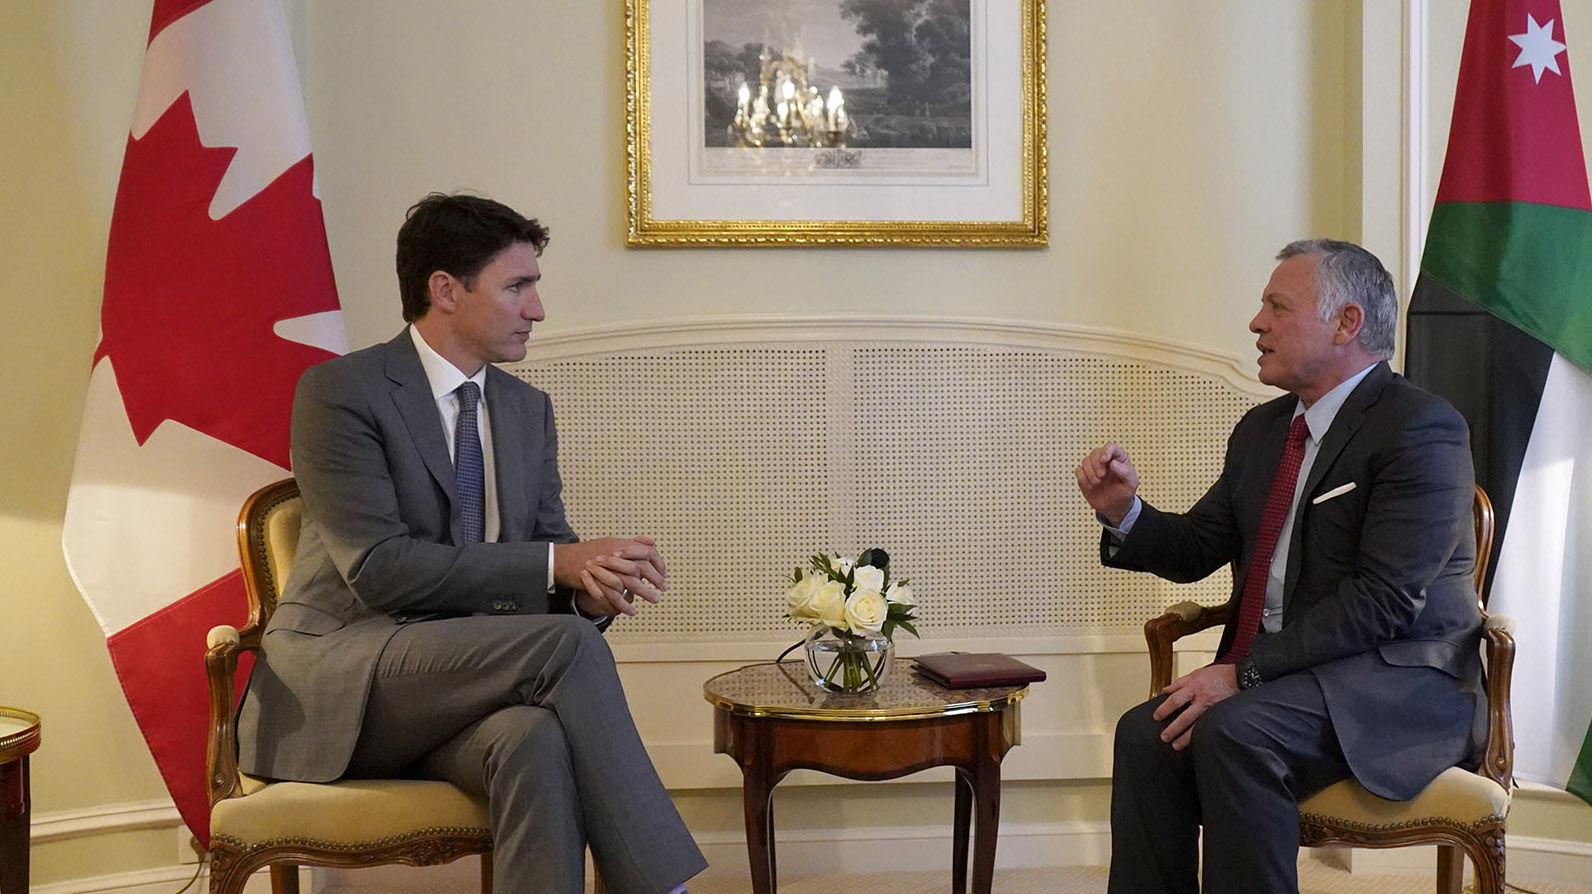 جلالة الملك عبدالله الثاني يلتقي مع رئيس الوزراء الكندي جاستن ترودو على هامش قمة نداء كرايست تشيرش في باريس، 15 مايو 2019. الديوان الملكي الهاشمي)